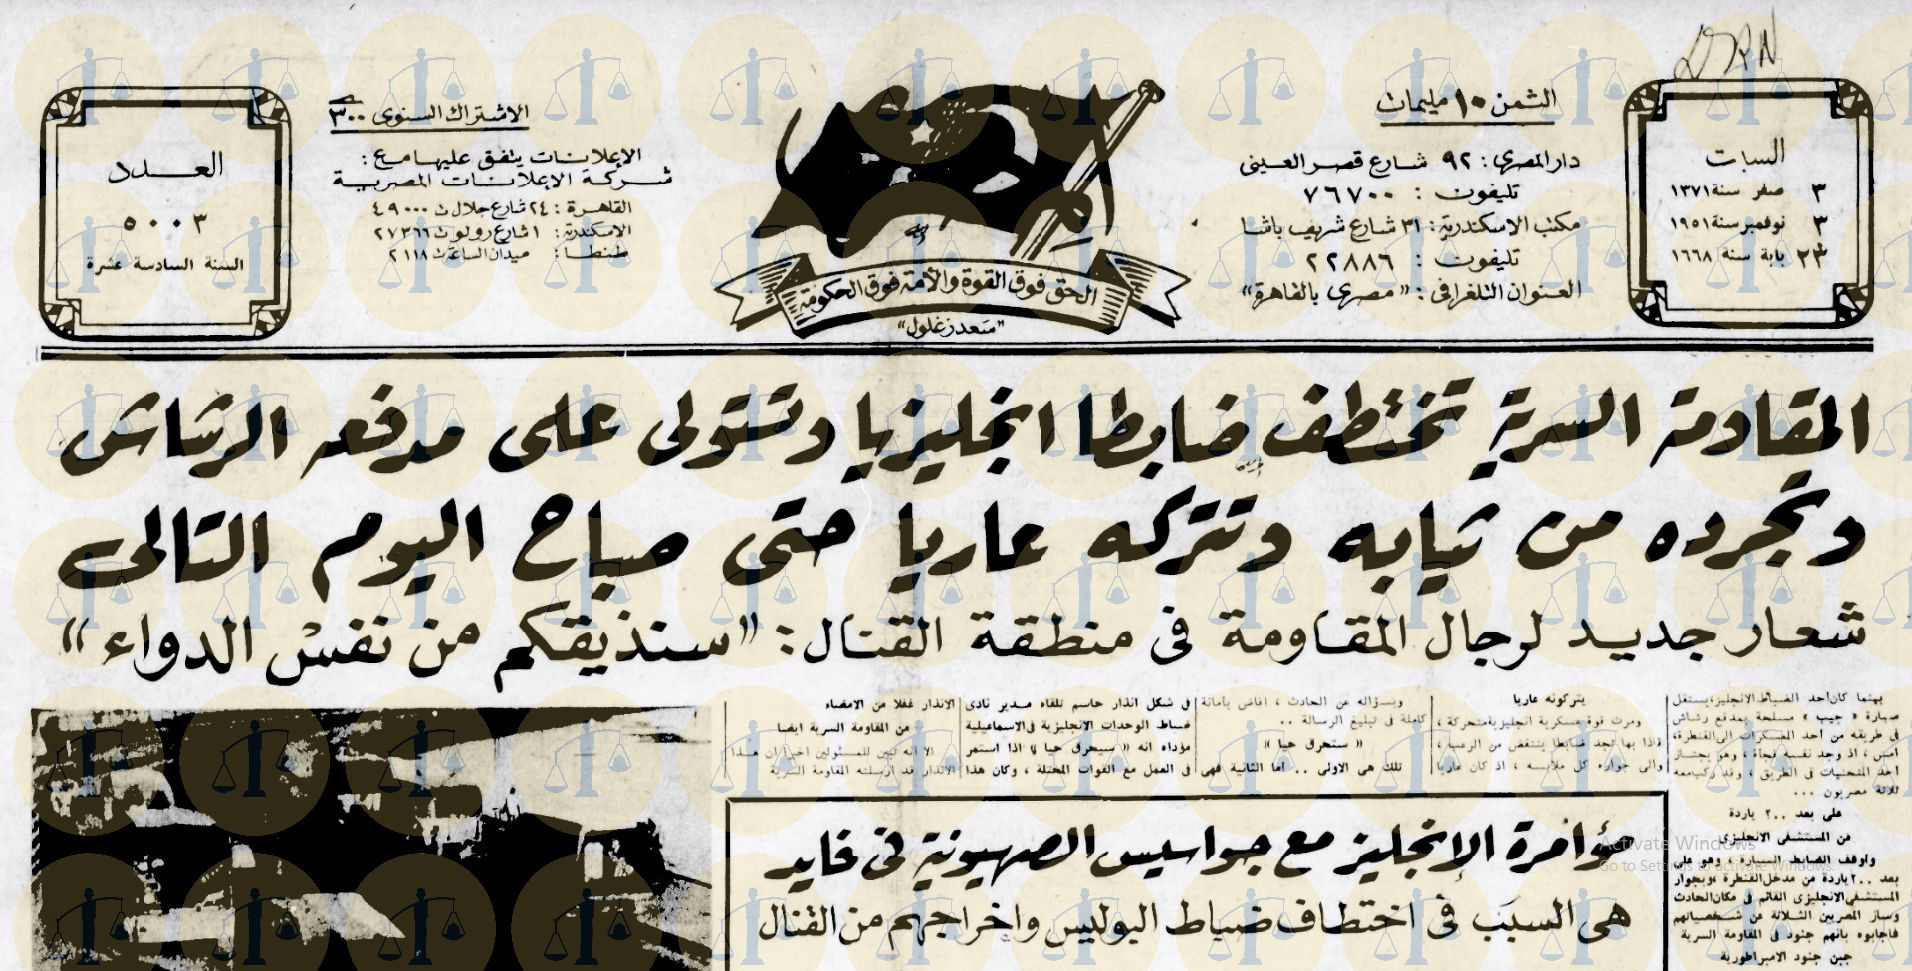  يوم 3 نوفمبر 1951 - رد الفدائيين على الخطف